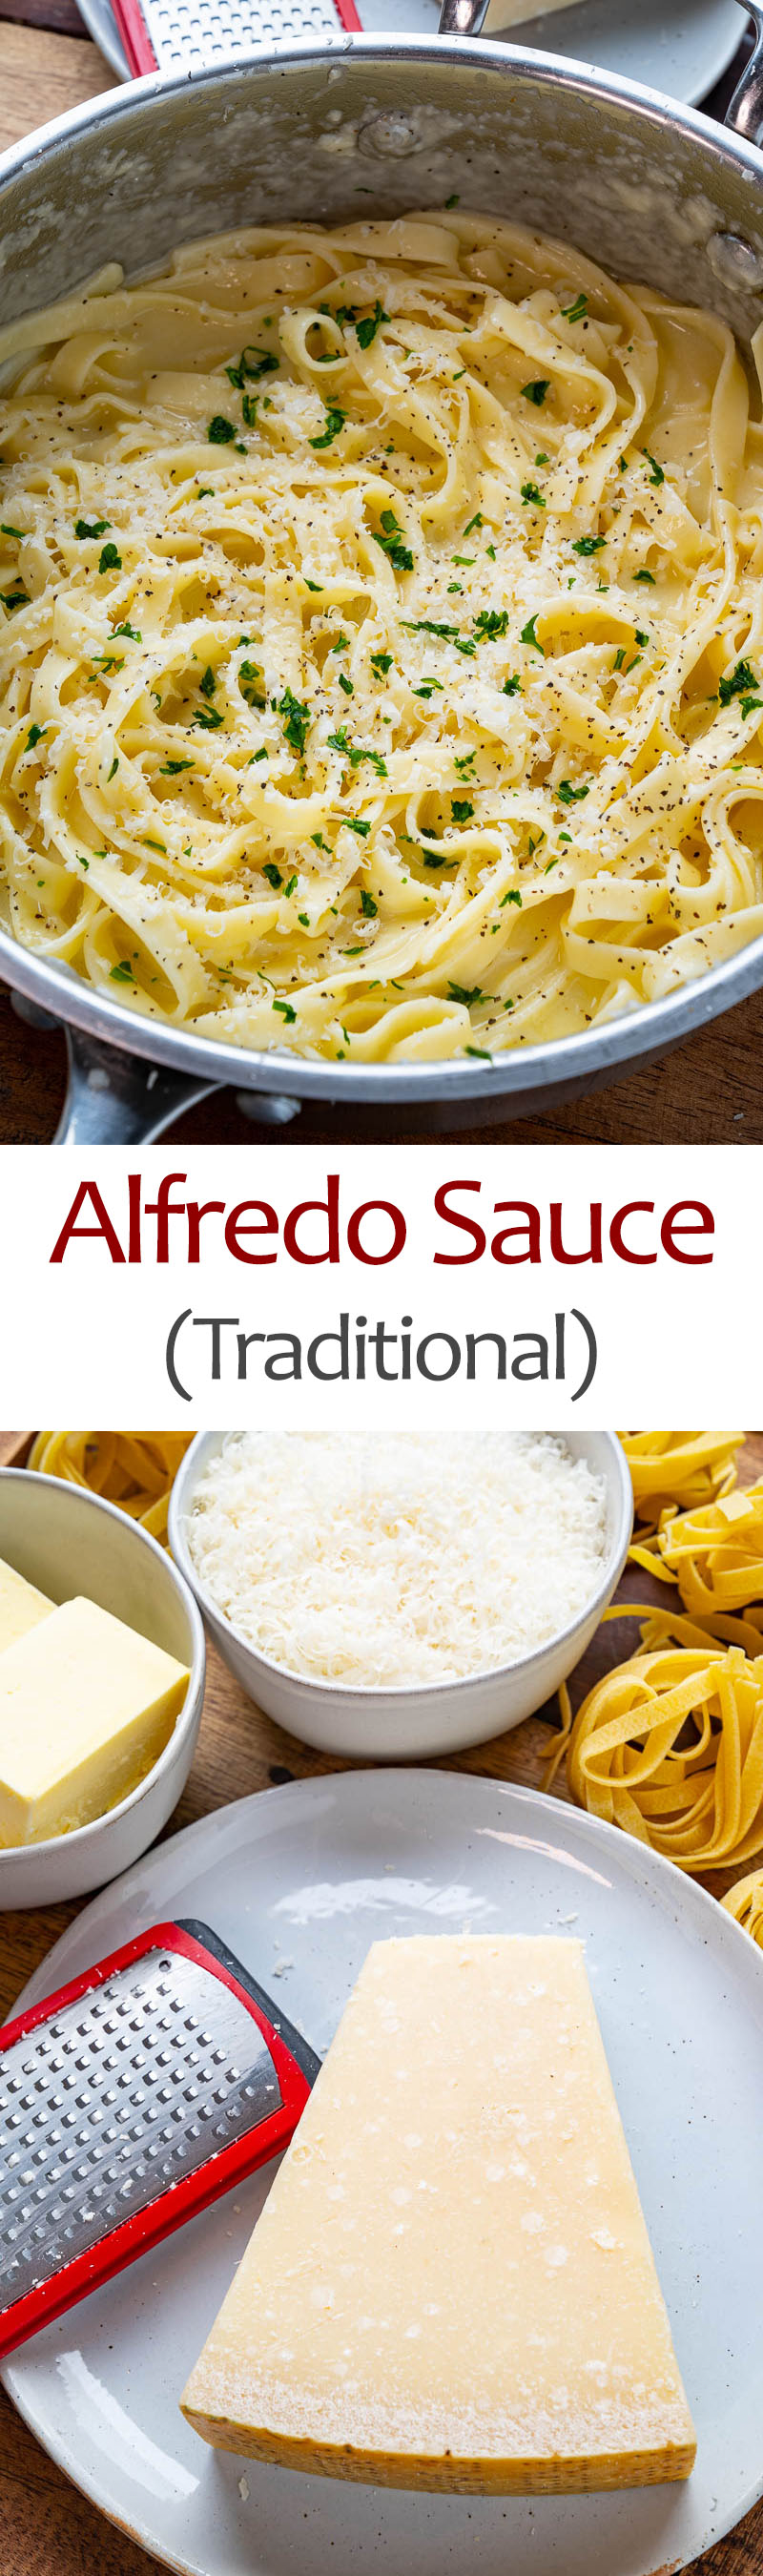 Traditional Pasta alla Alfredo